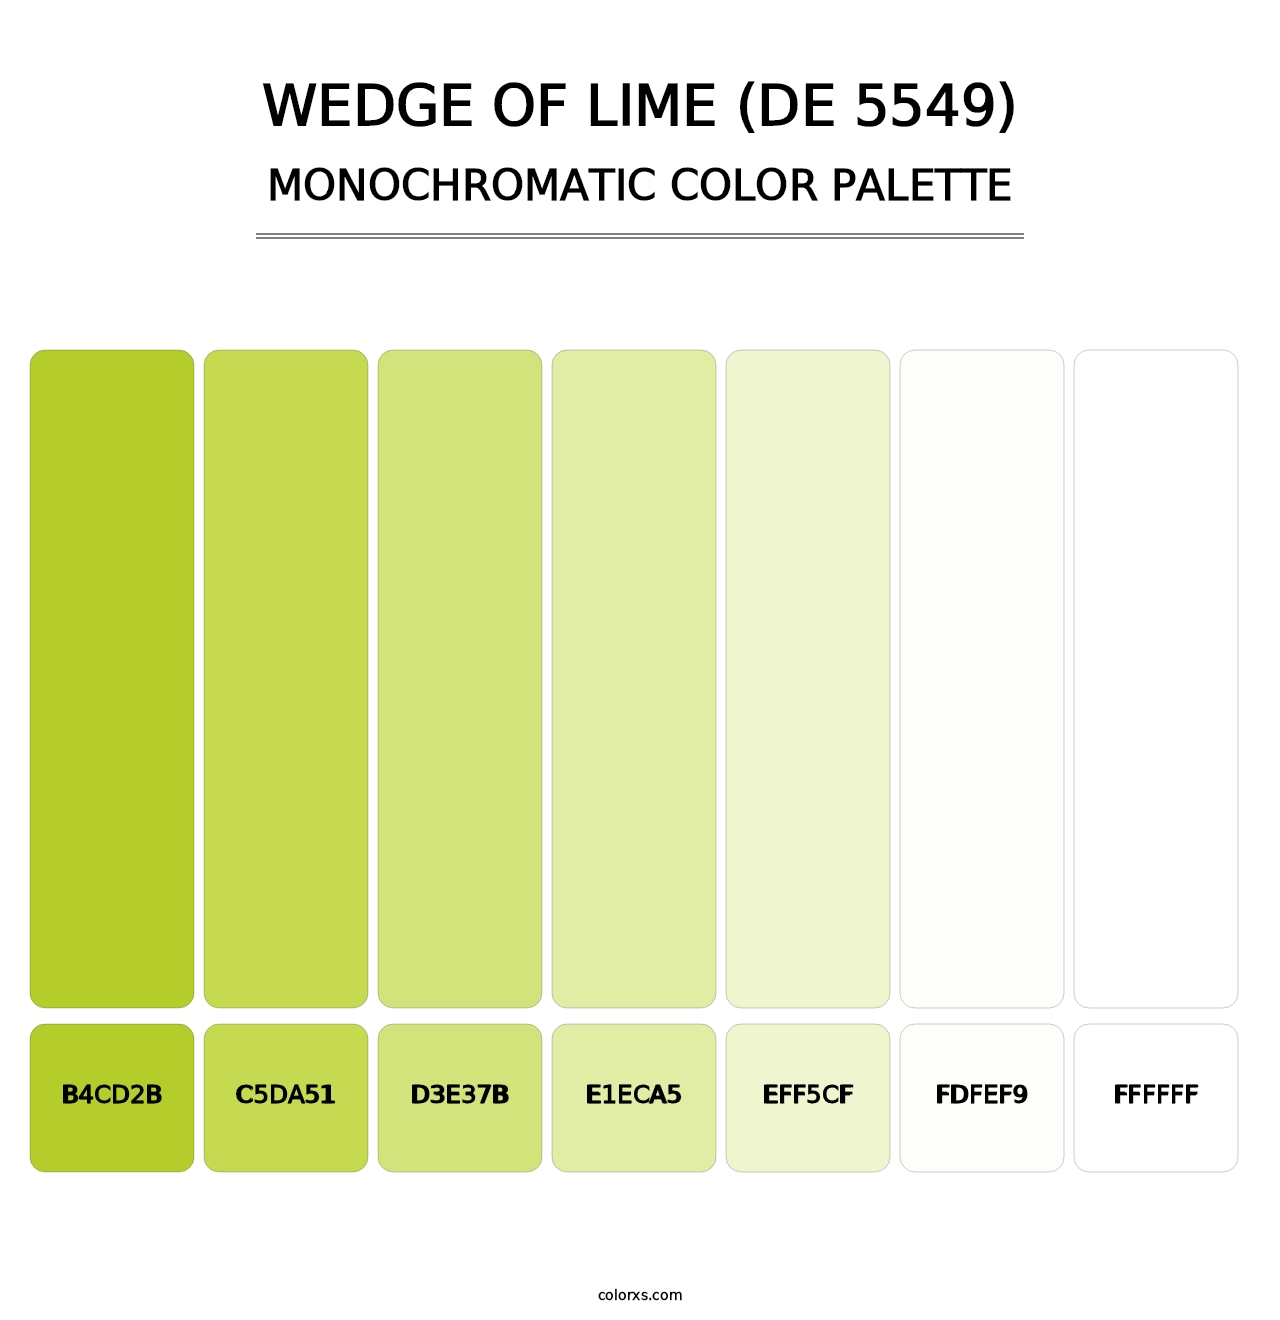 Wedge of Lime (DE 5549) - Monochromatic Color Palette